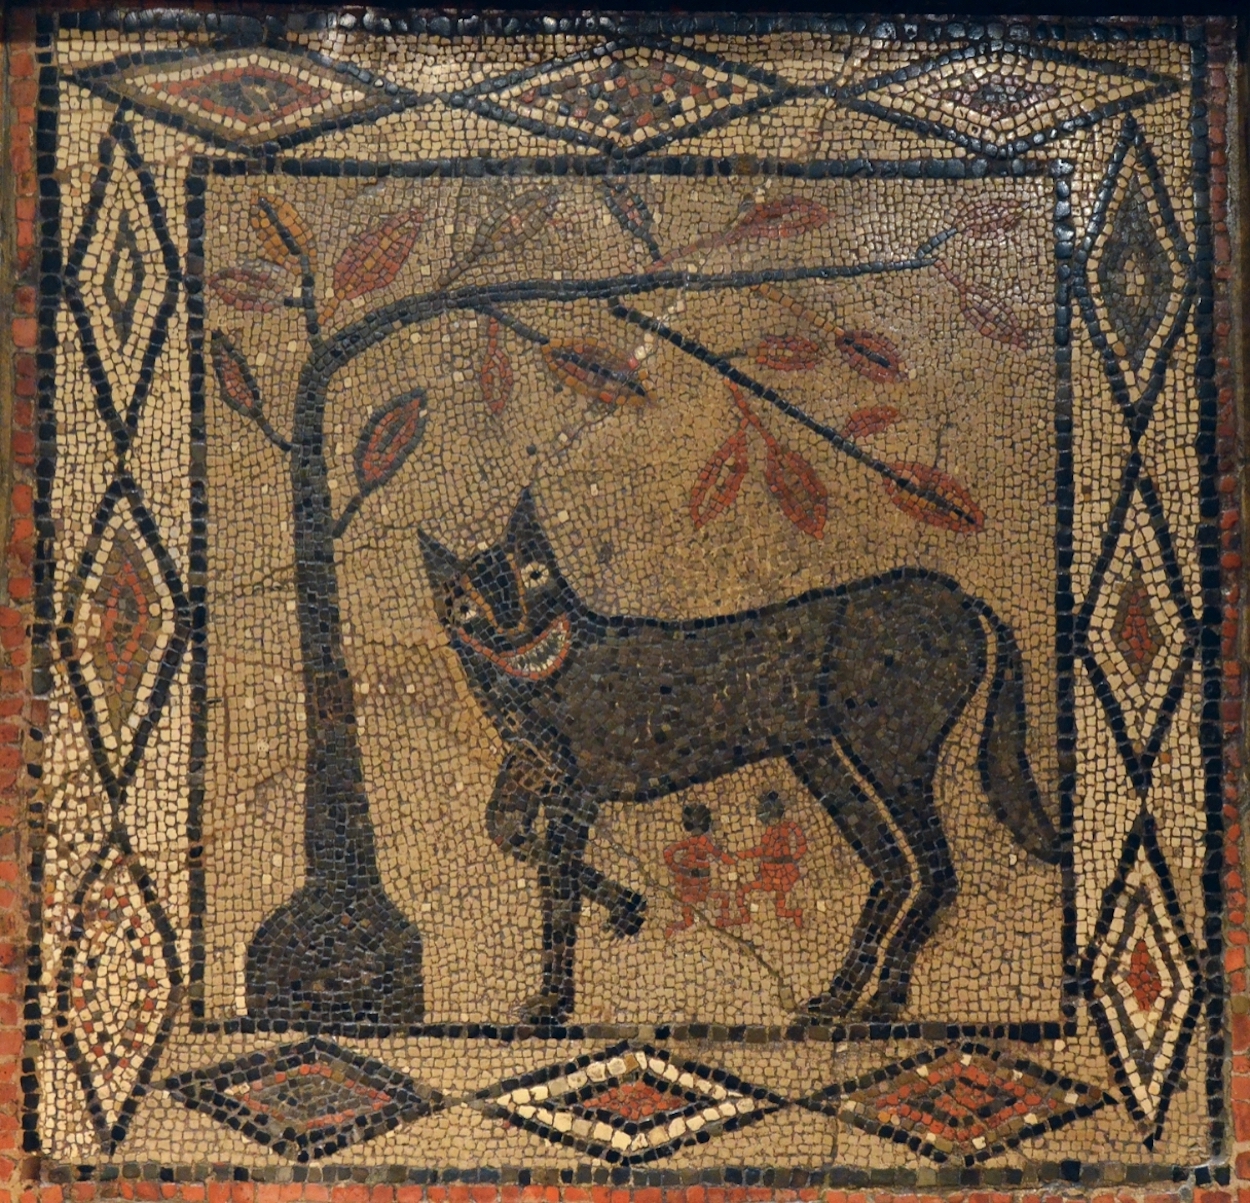 Loba com Rómulo e Remo by Artista Desconhecido - c.300 AD 